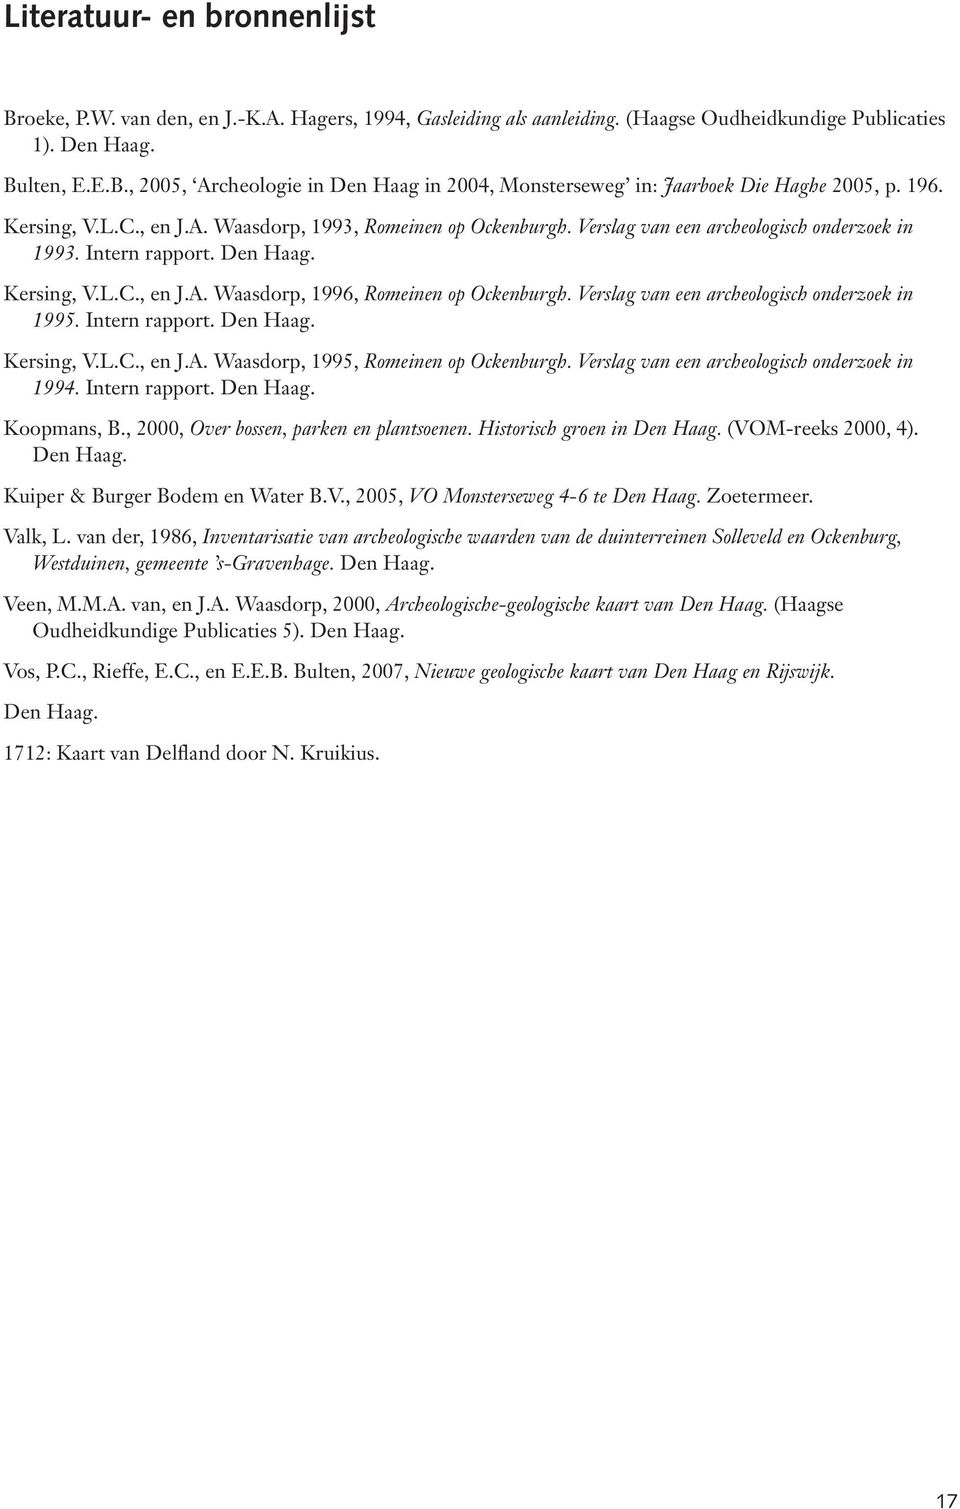 Verslag van een archeologisch onderzoek in 1995. Intern rapport. Den Haag. Kersing, V.L.C., en J.A. Waasdorp, 1995, Romeinen op Ockenburgh. Verslag van een archeologisch onderzoek in 1994.